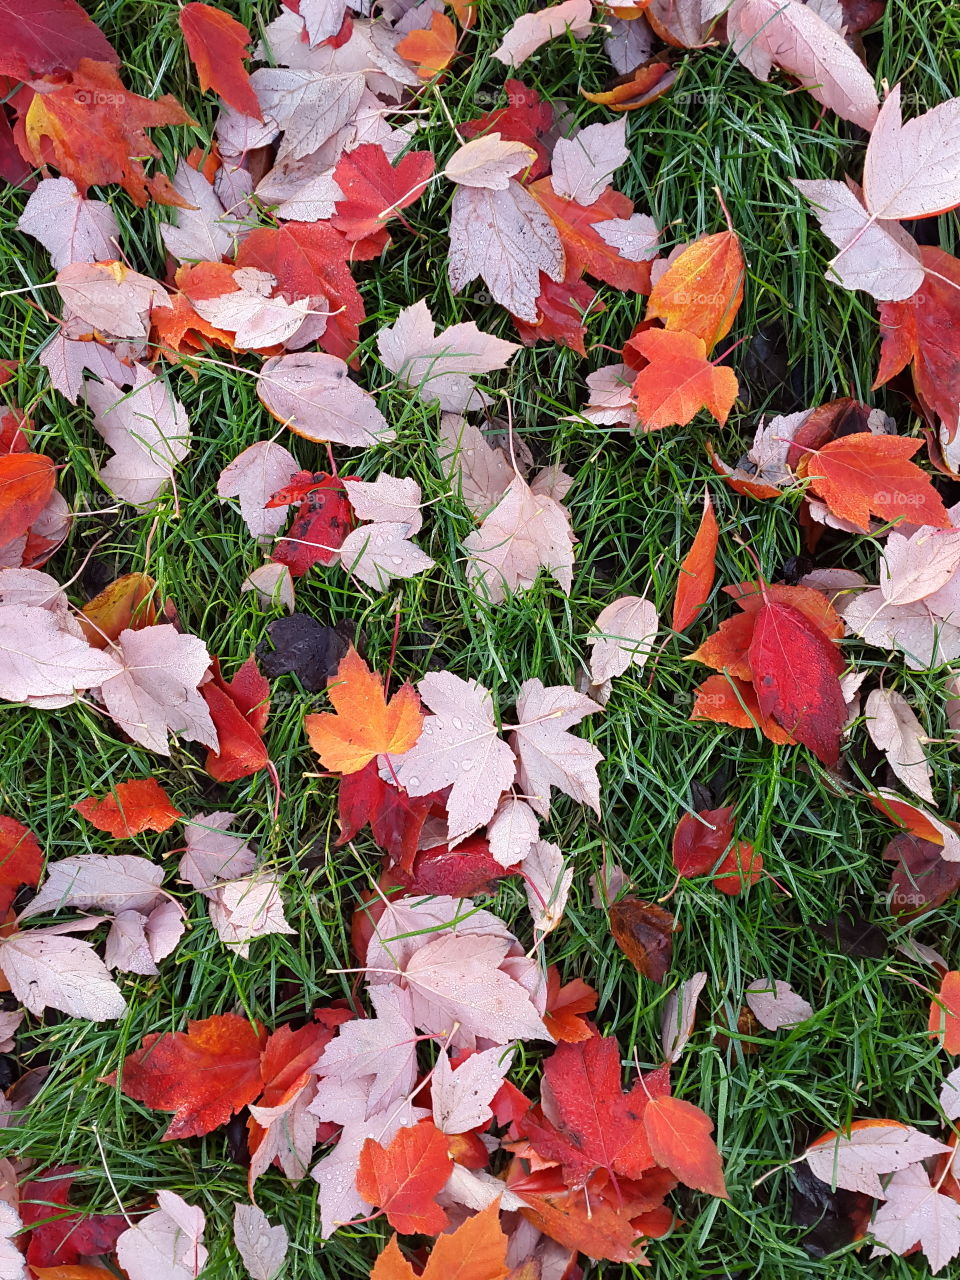 fallen maples colour the morning grass